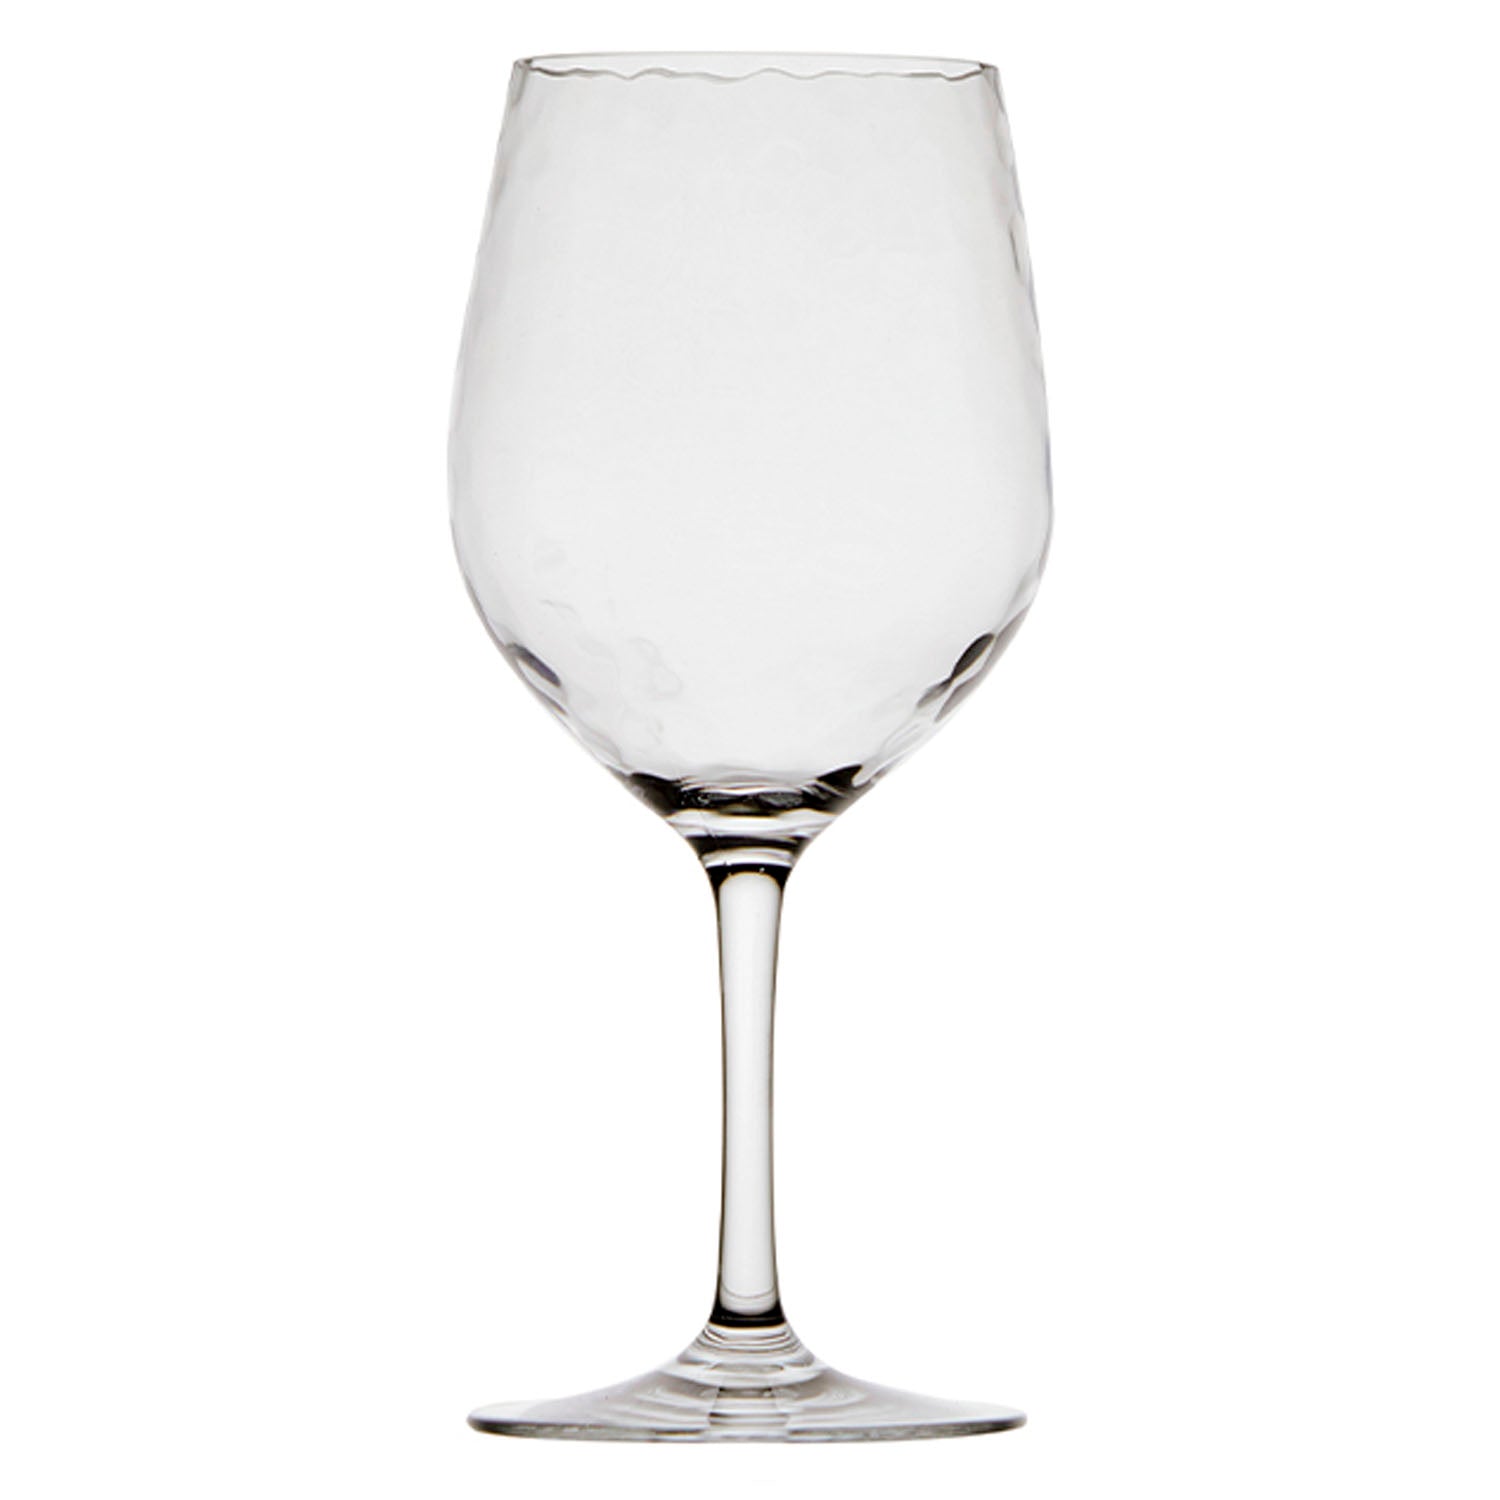 PARTY X6 WINE GLASS